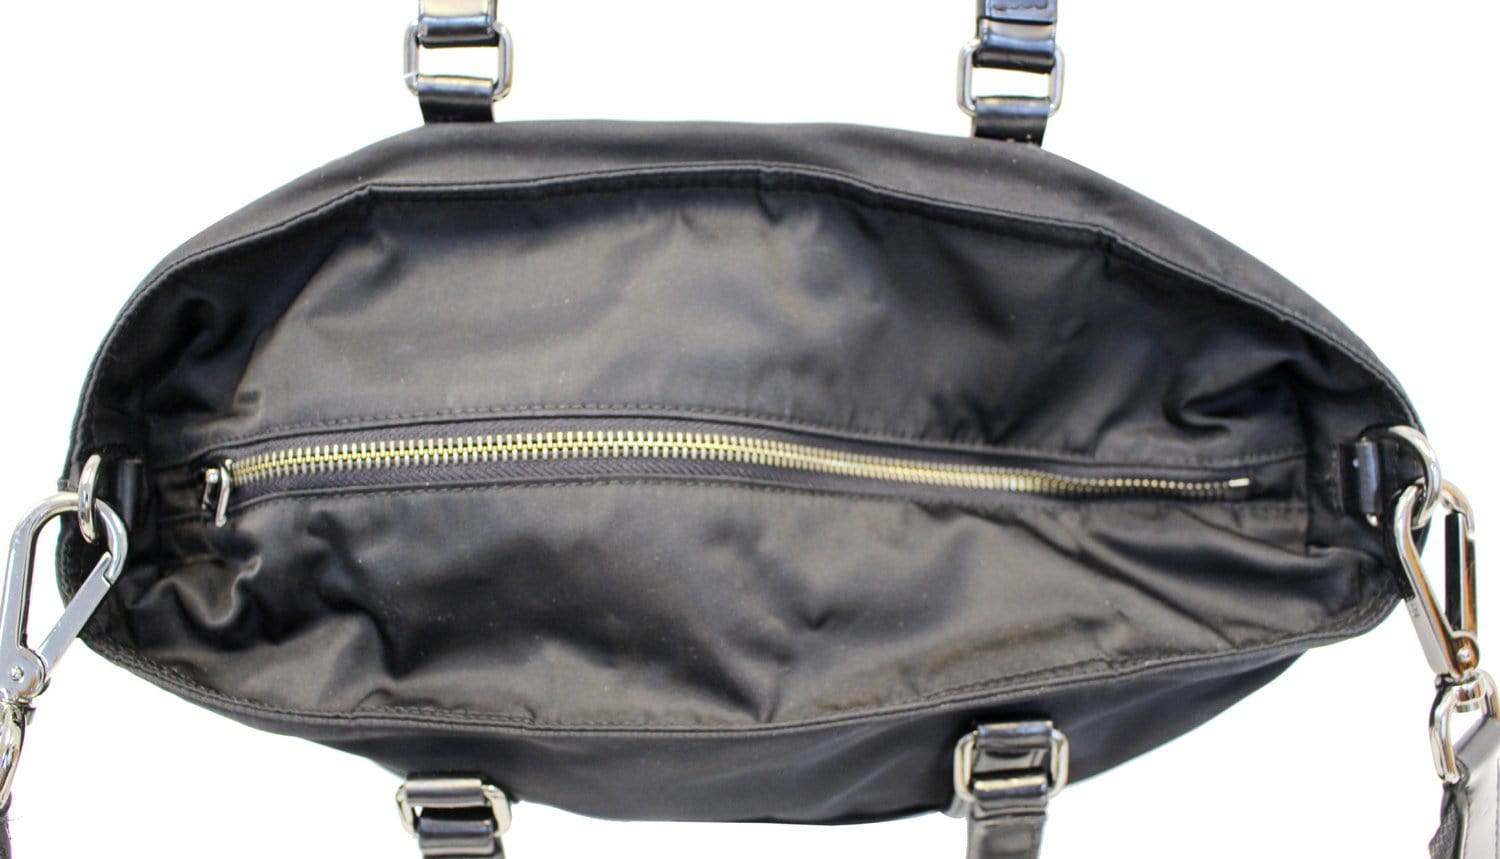 Prada Black Tessuto and Saffiano Leather Crossbody Bag Prada